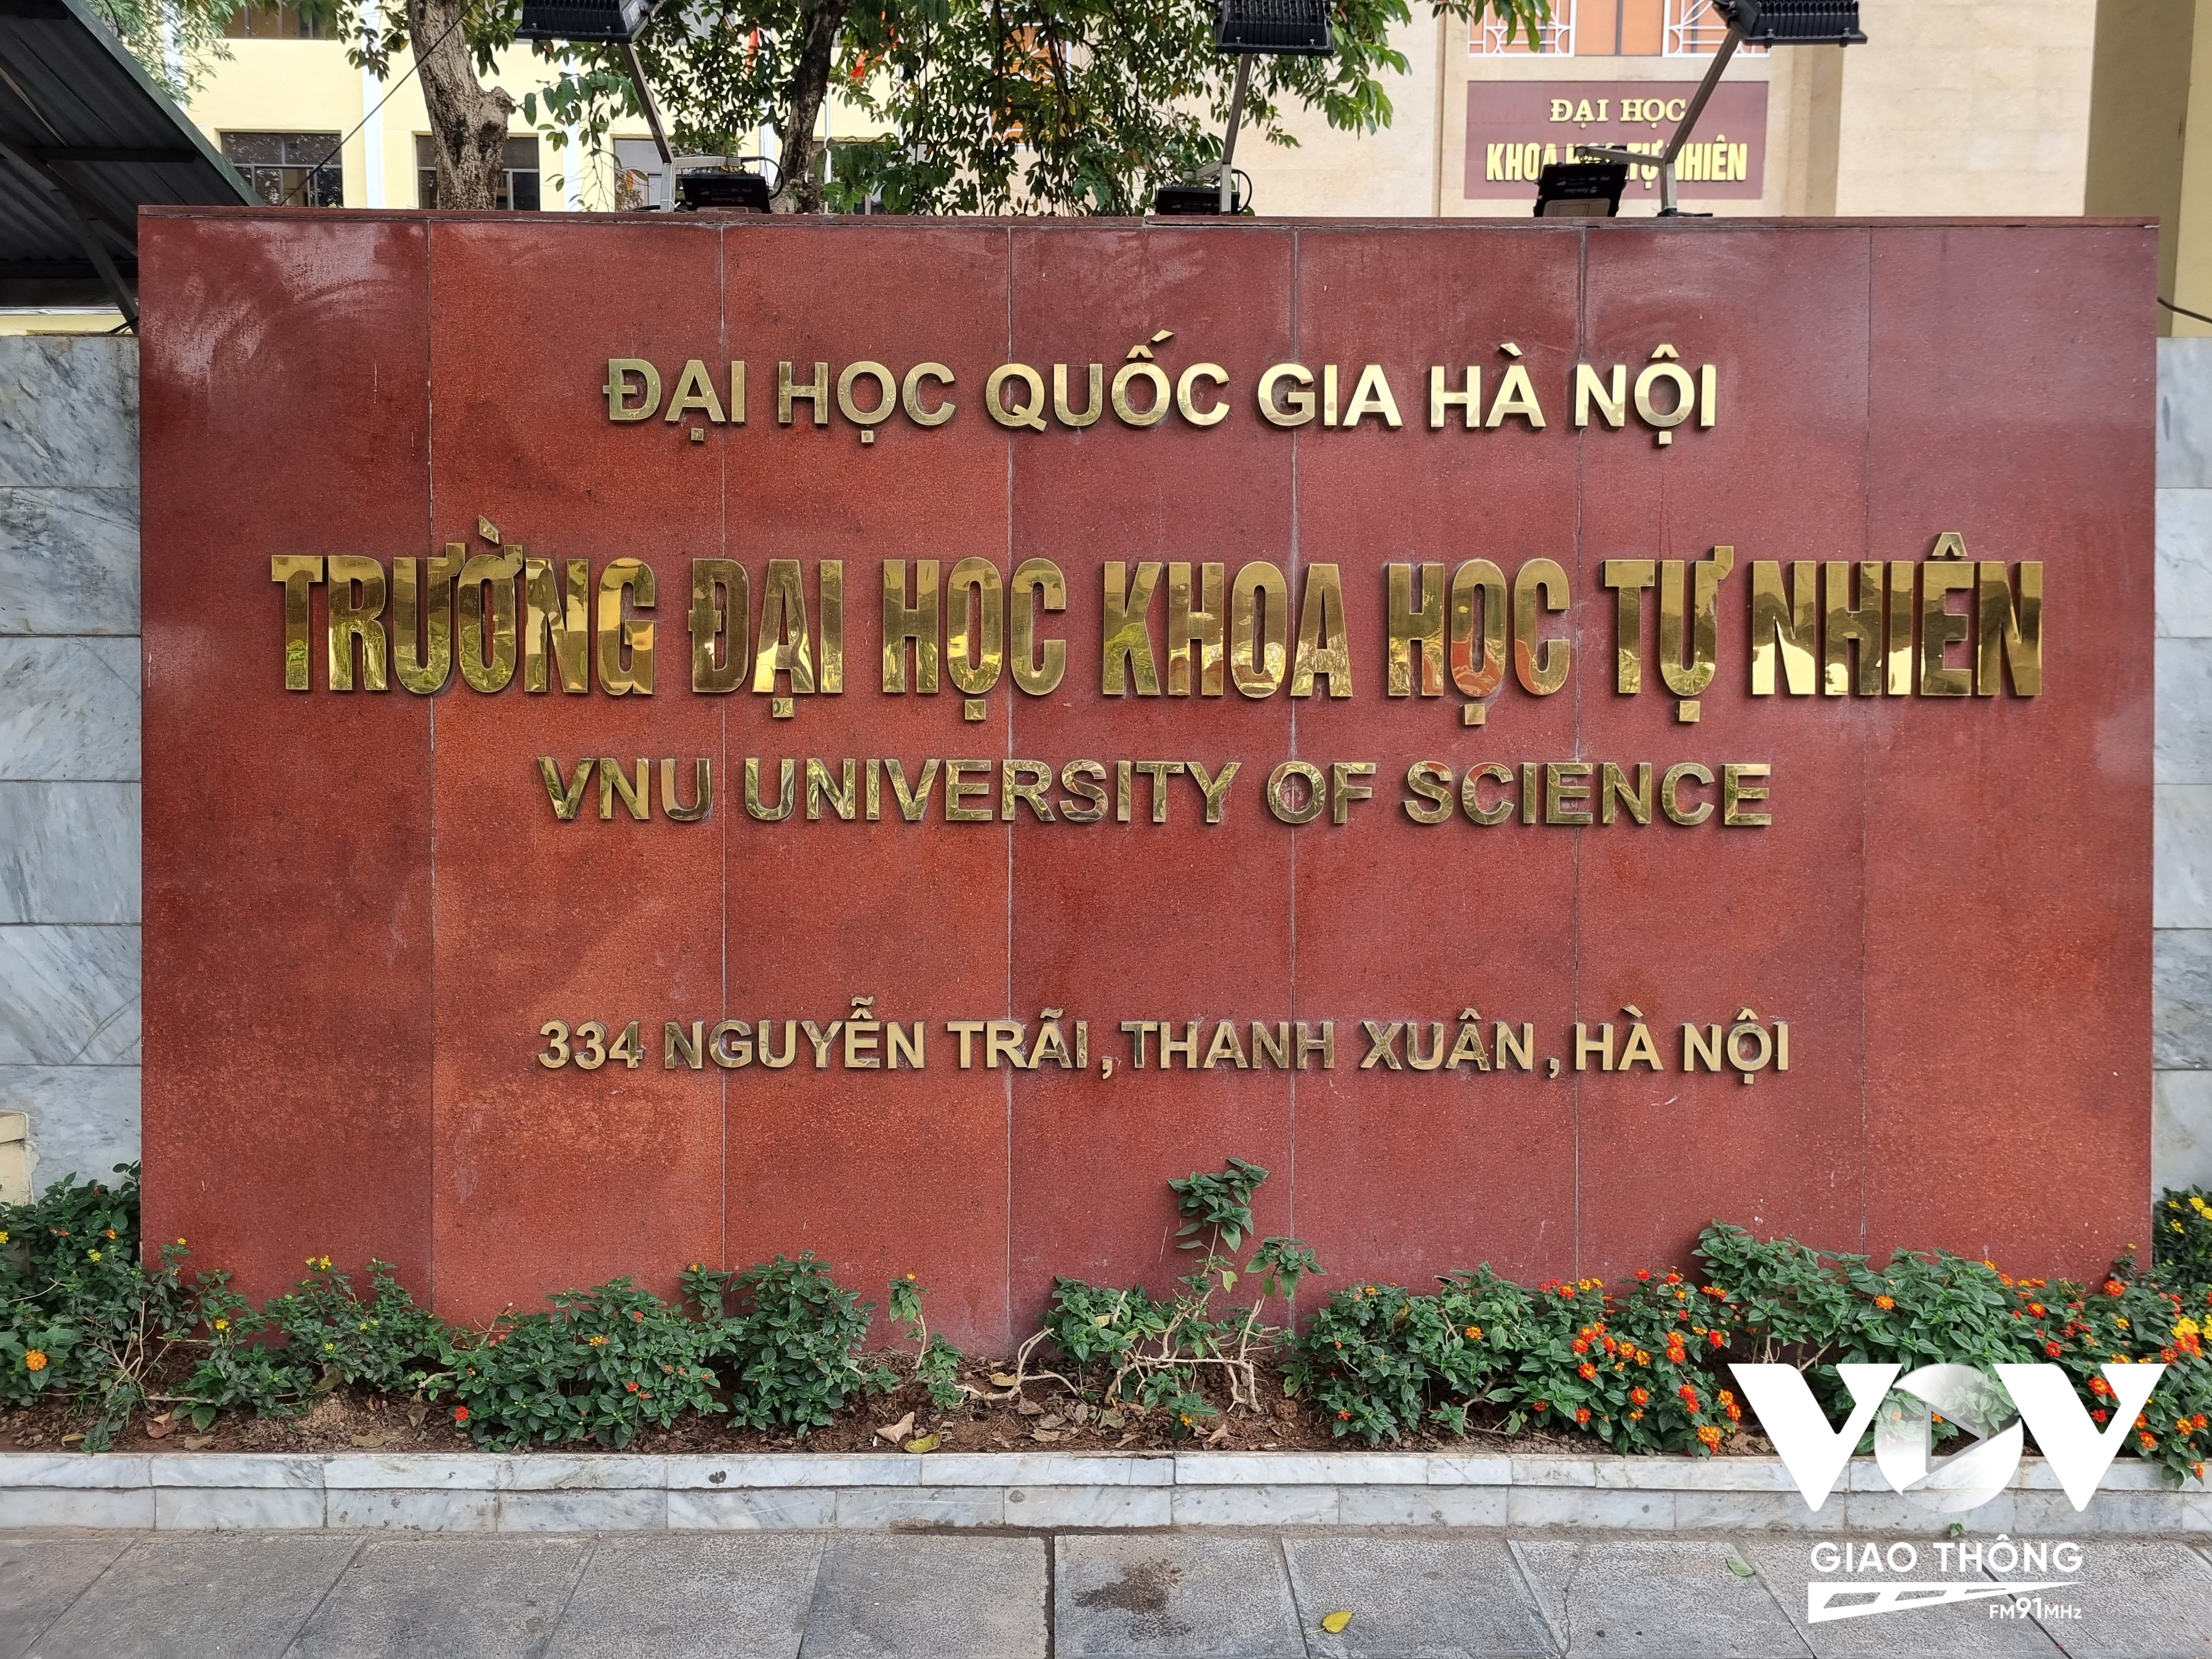 Cùng địa chỉ 334 Nguyễn Trãi, nhưng một nơi là Trường đại học Khoa học Tự nhiên